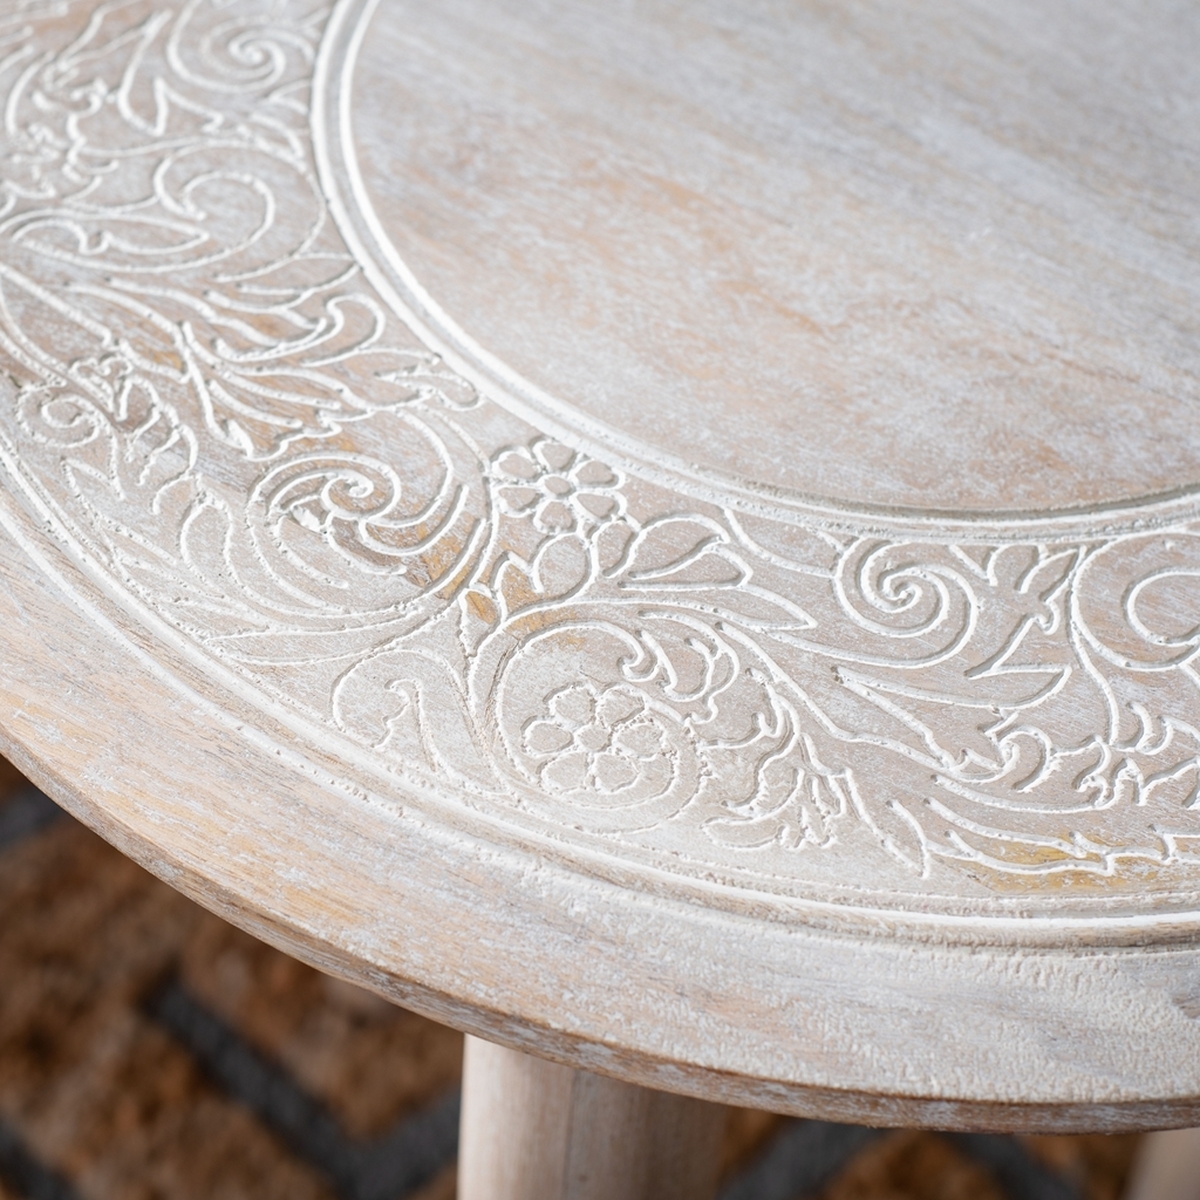 Rehnuma Carved Side Table - Image 2